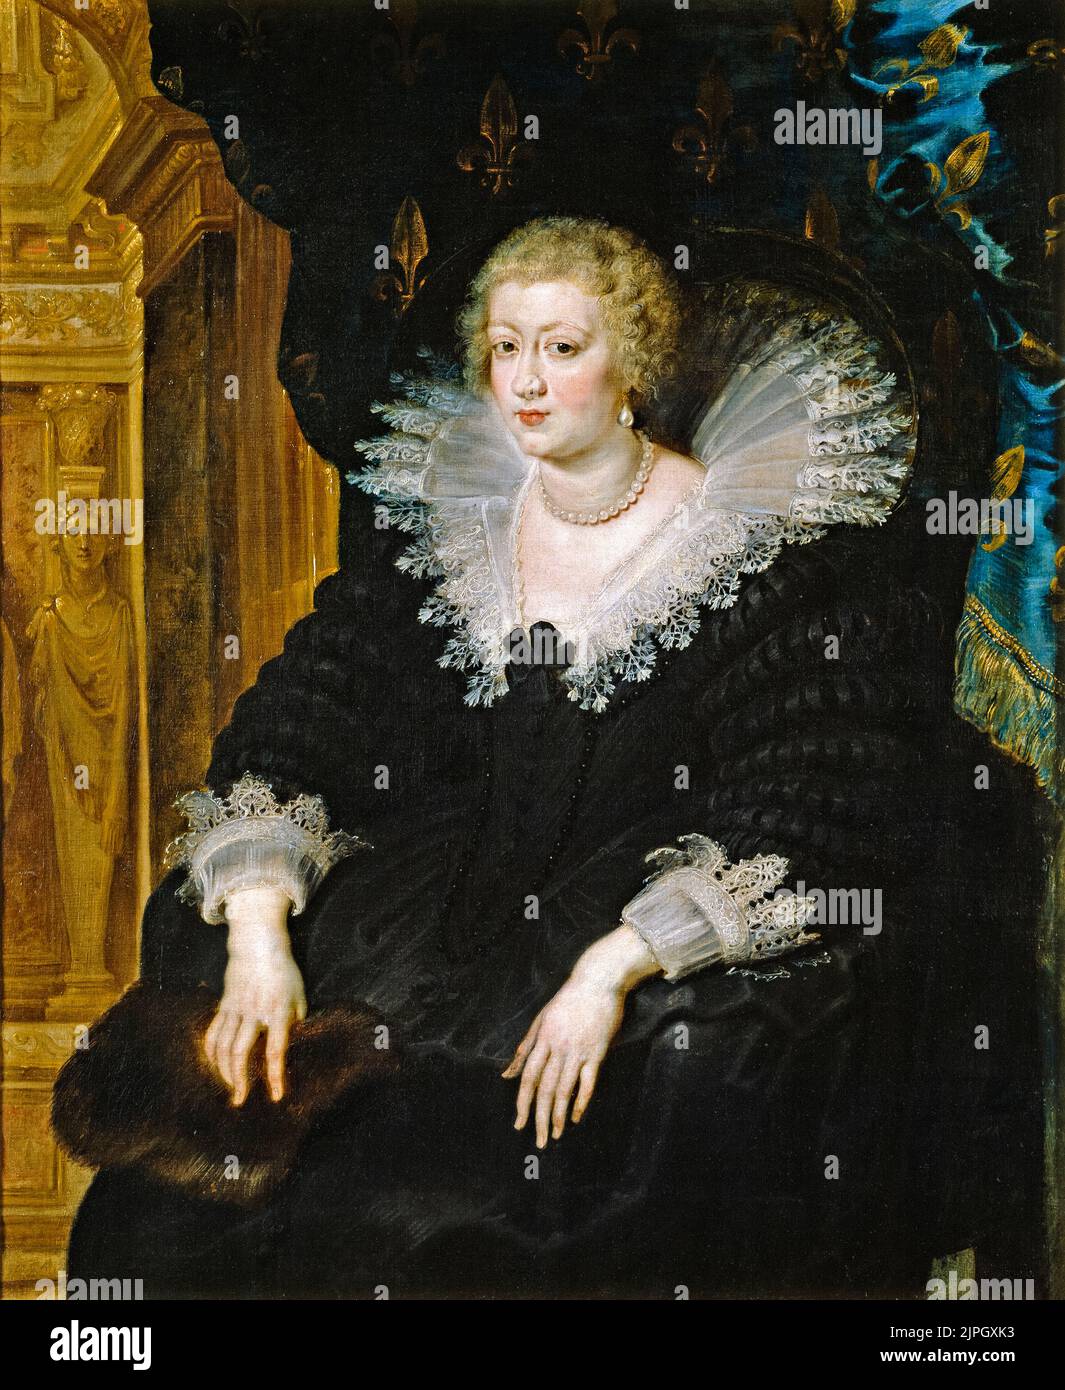 Anne d'Autriche (1601-1666), reine de France, épouse de Louis XIII, roi de France, portrait peint à l'huile sur toile par Peter Paul Rubens, vers 1622 Banque D'Images